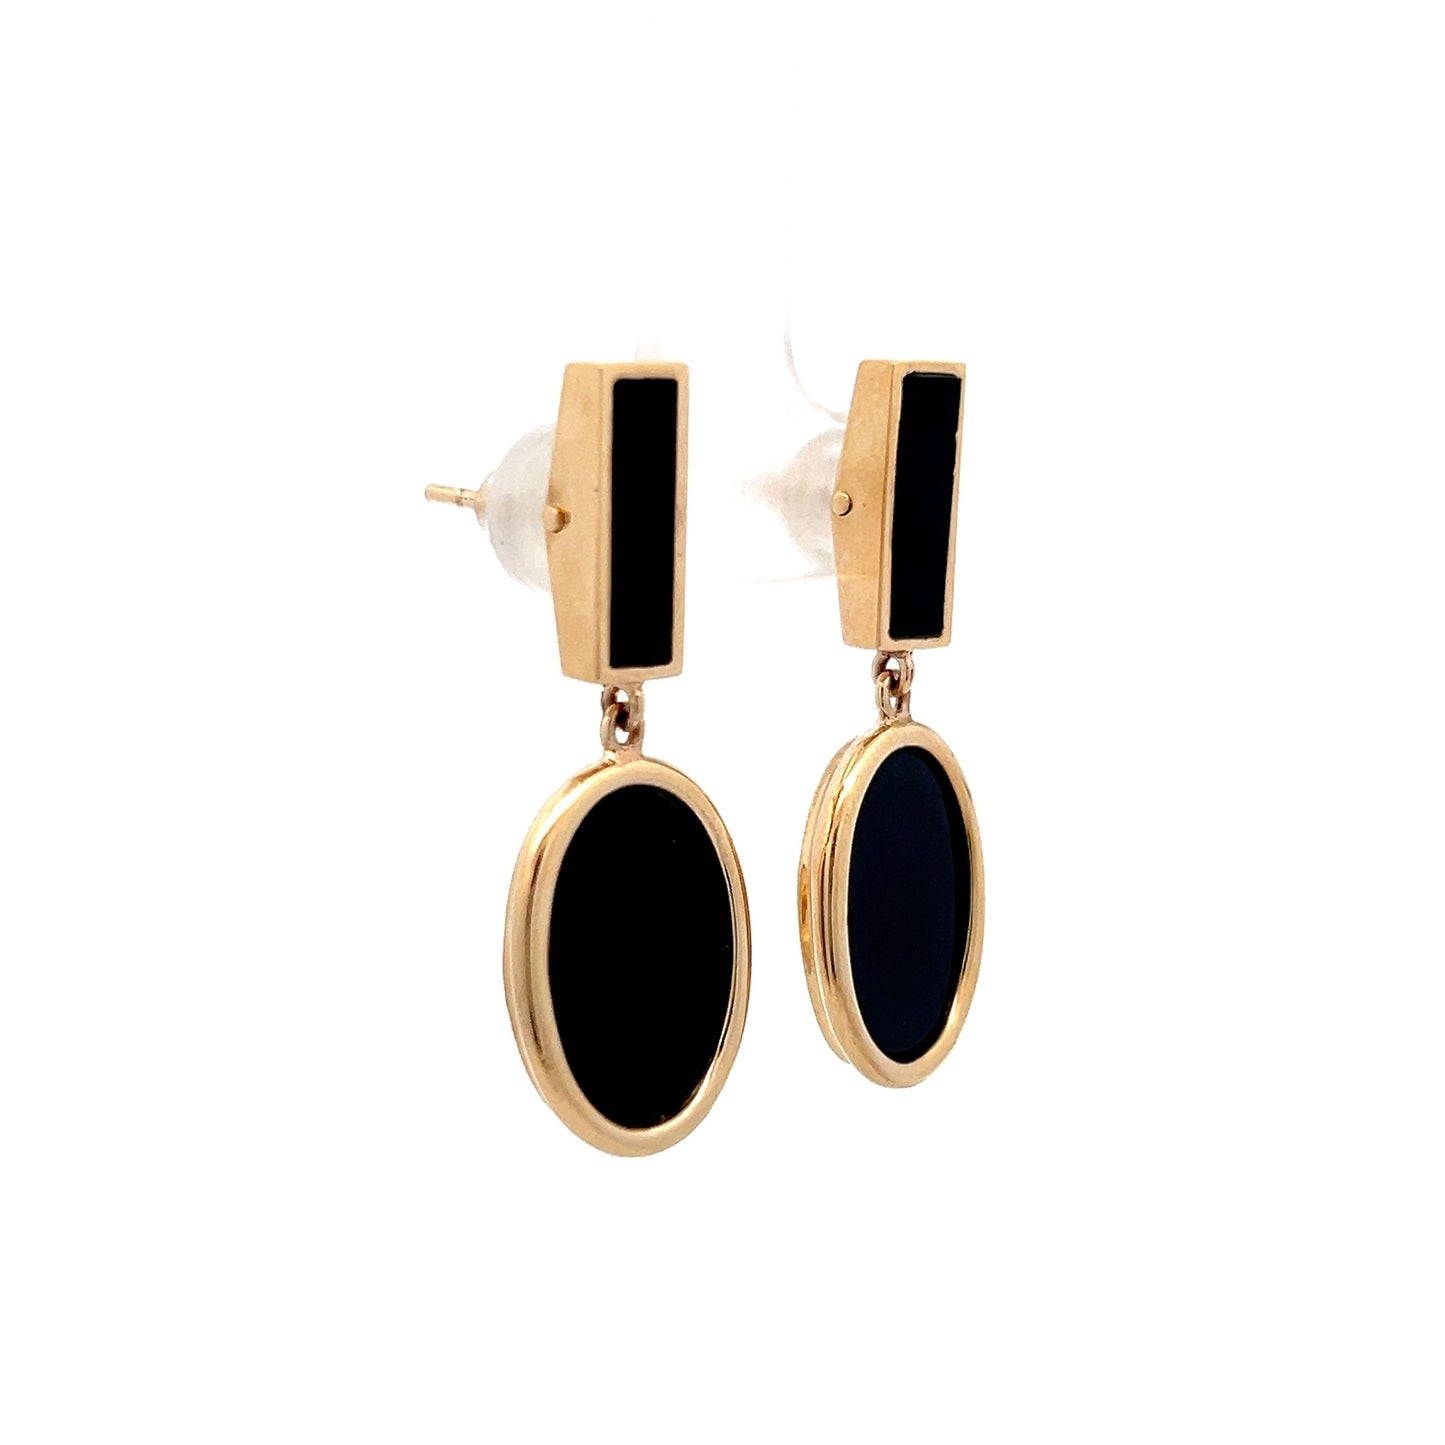 Black Onyx Dangle Earrings in 14k Yellow Gold